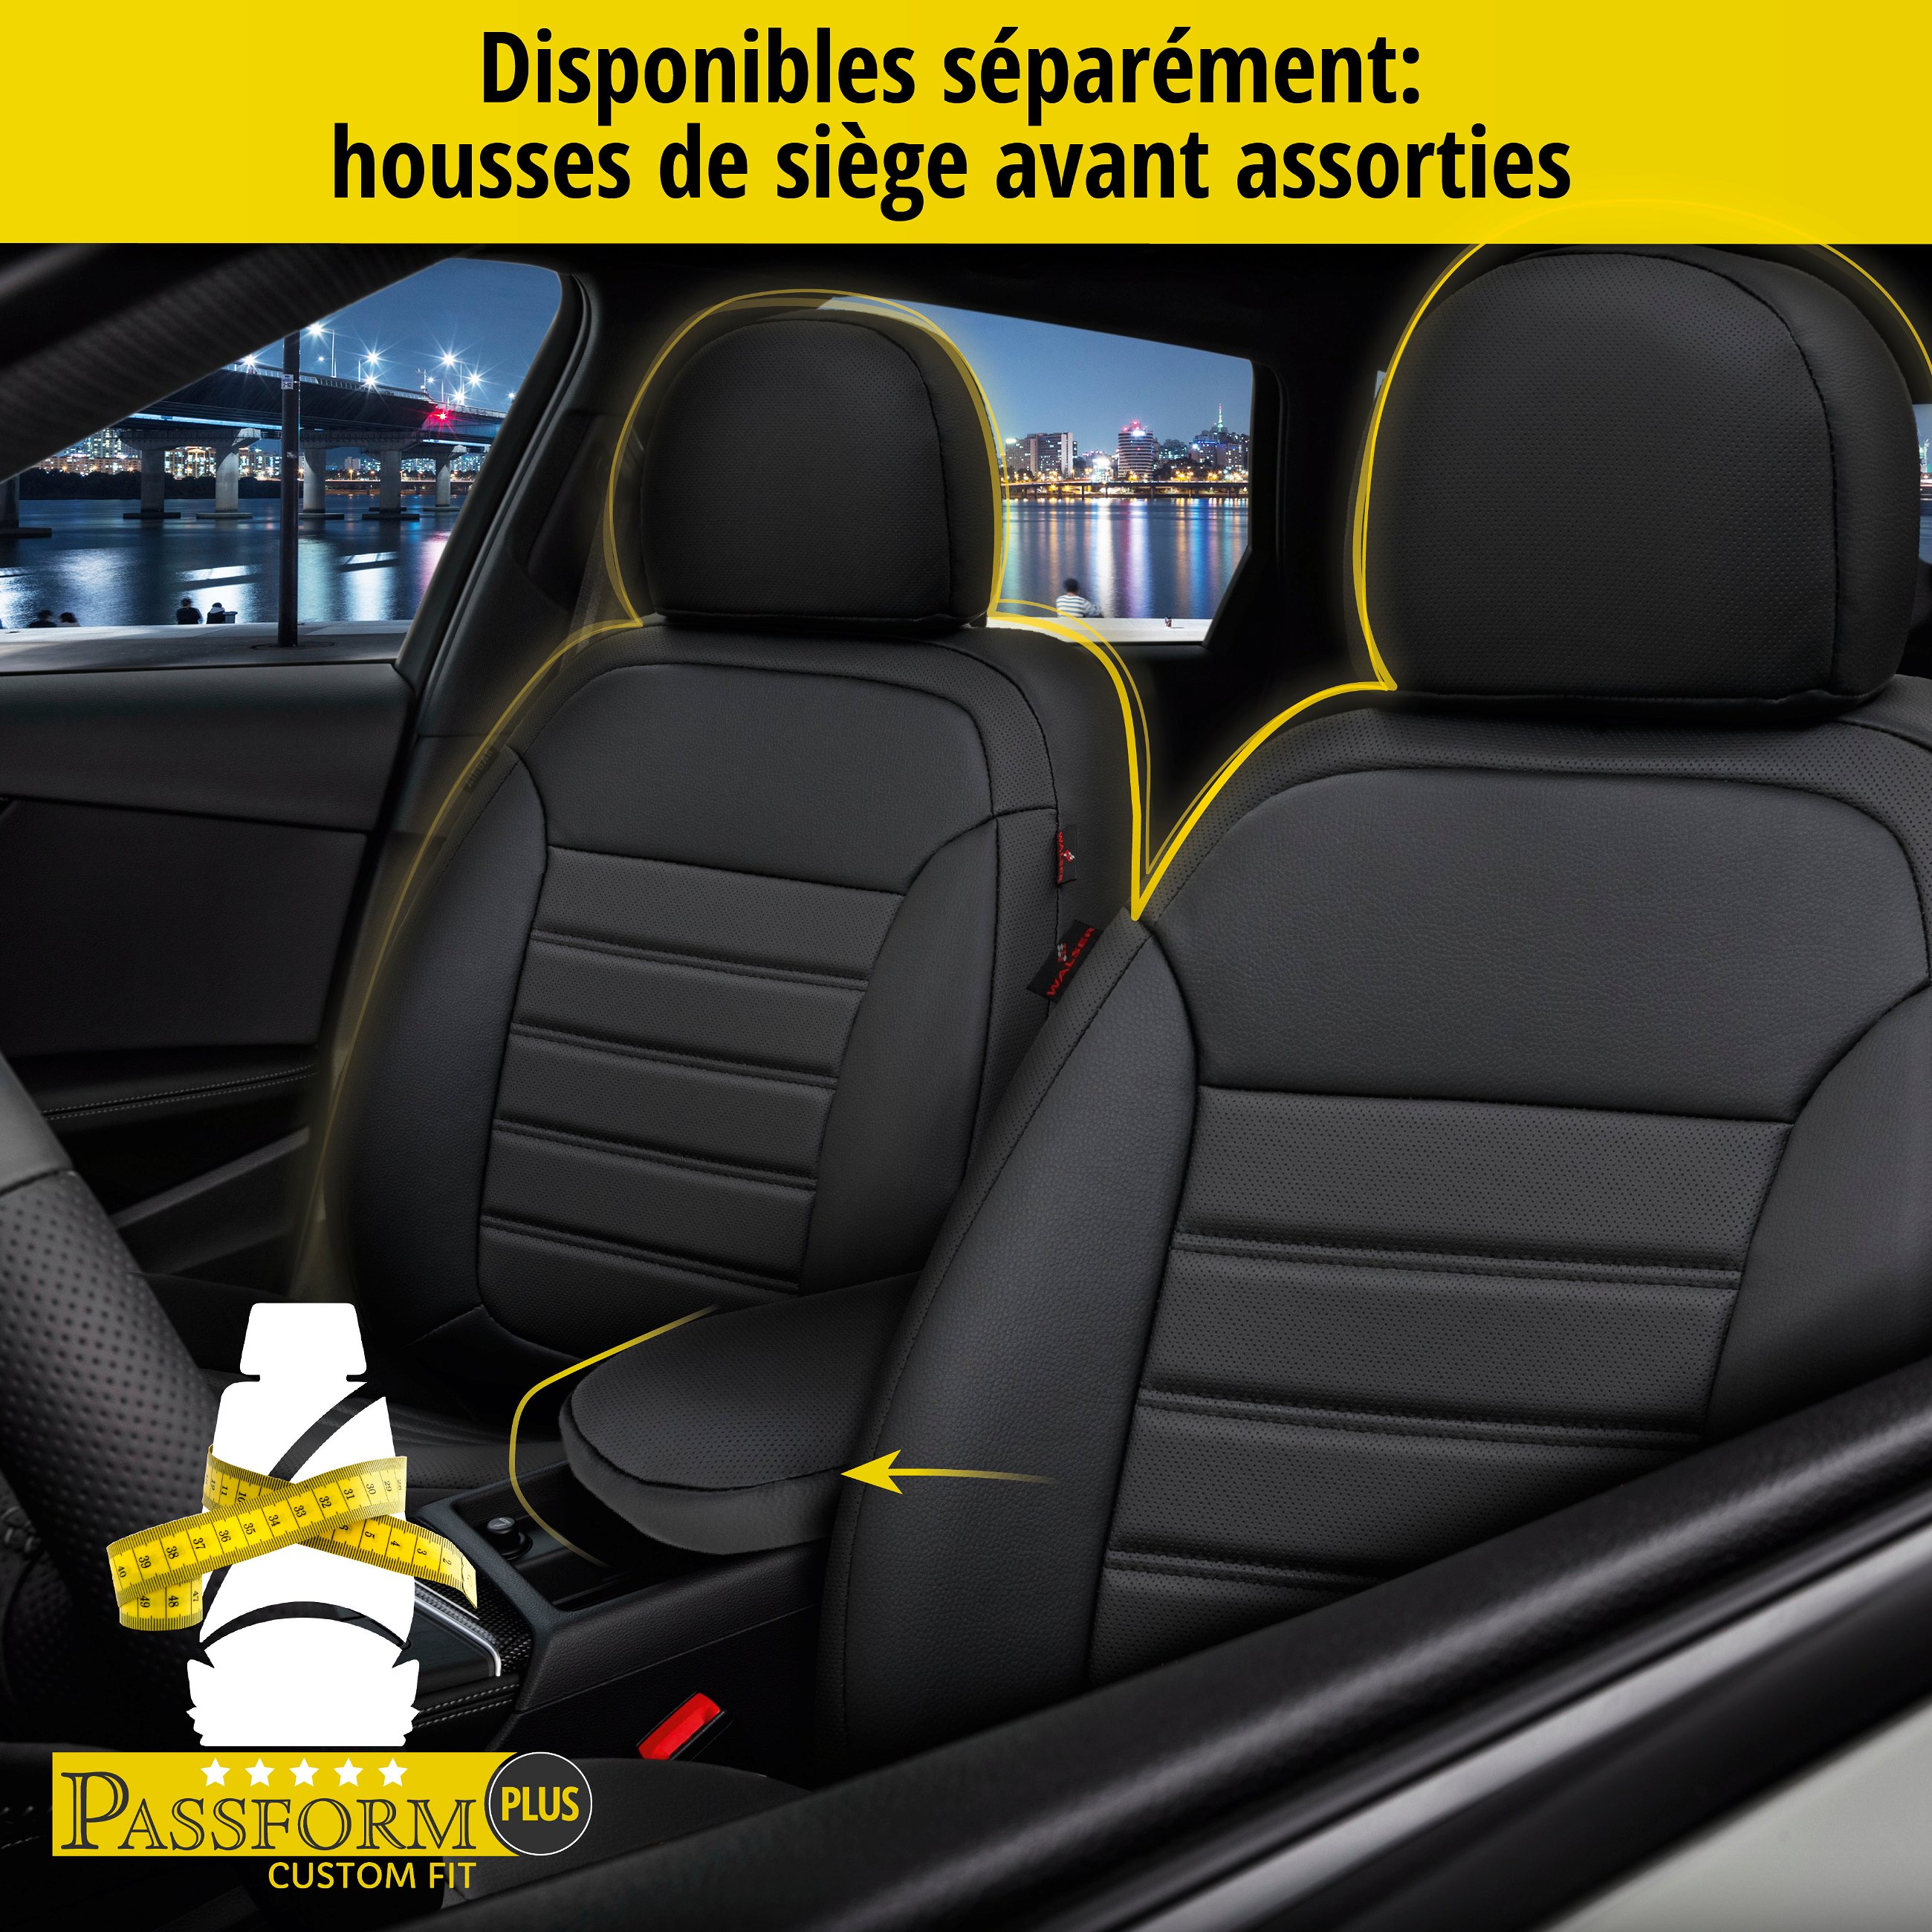 Housse de siège Robusto pour VW Passat Variant (365) 08/2010-12/2015, 1 housse de siège arrière pour les sièges normaux